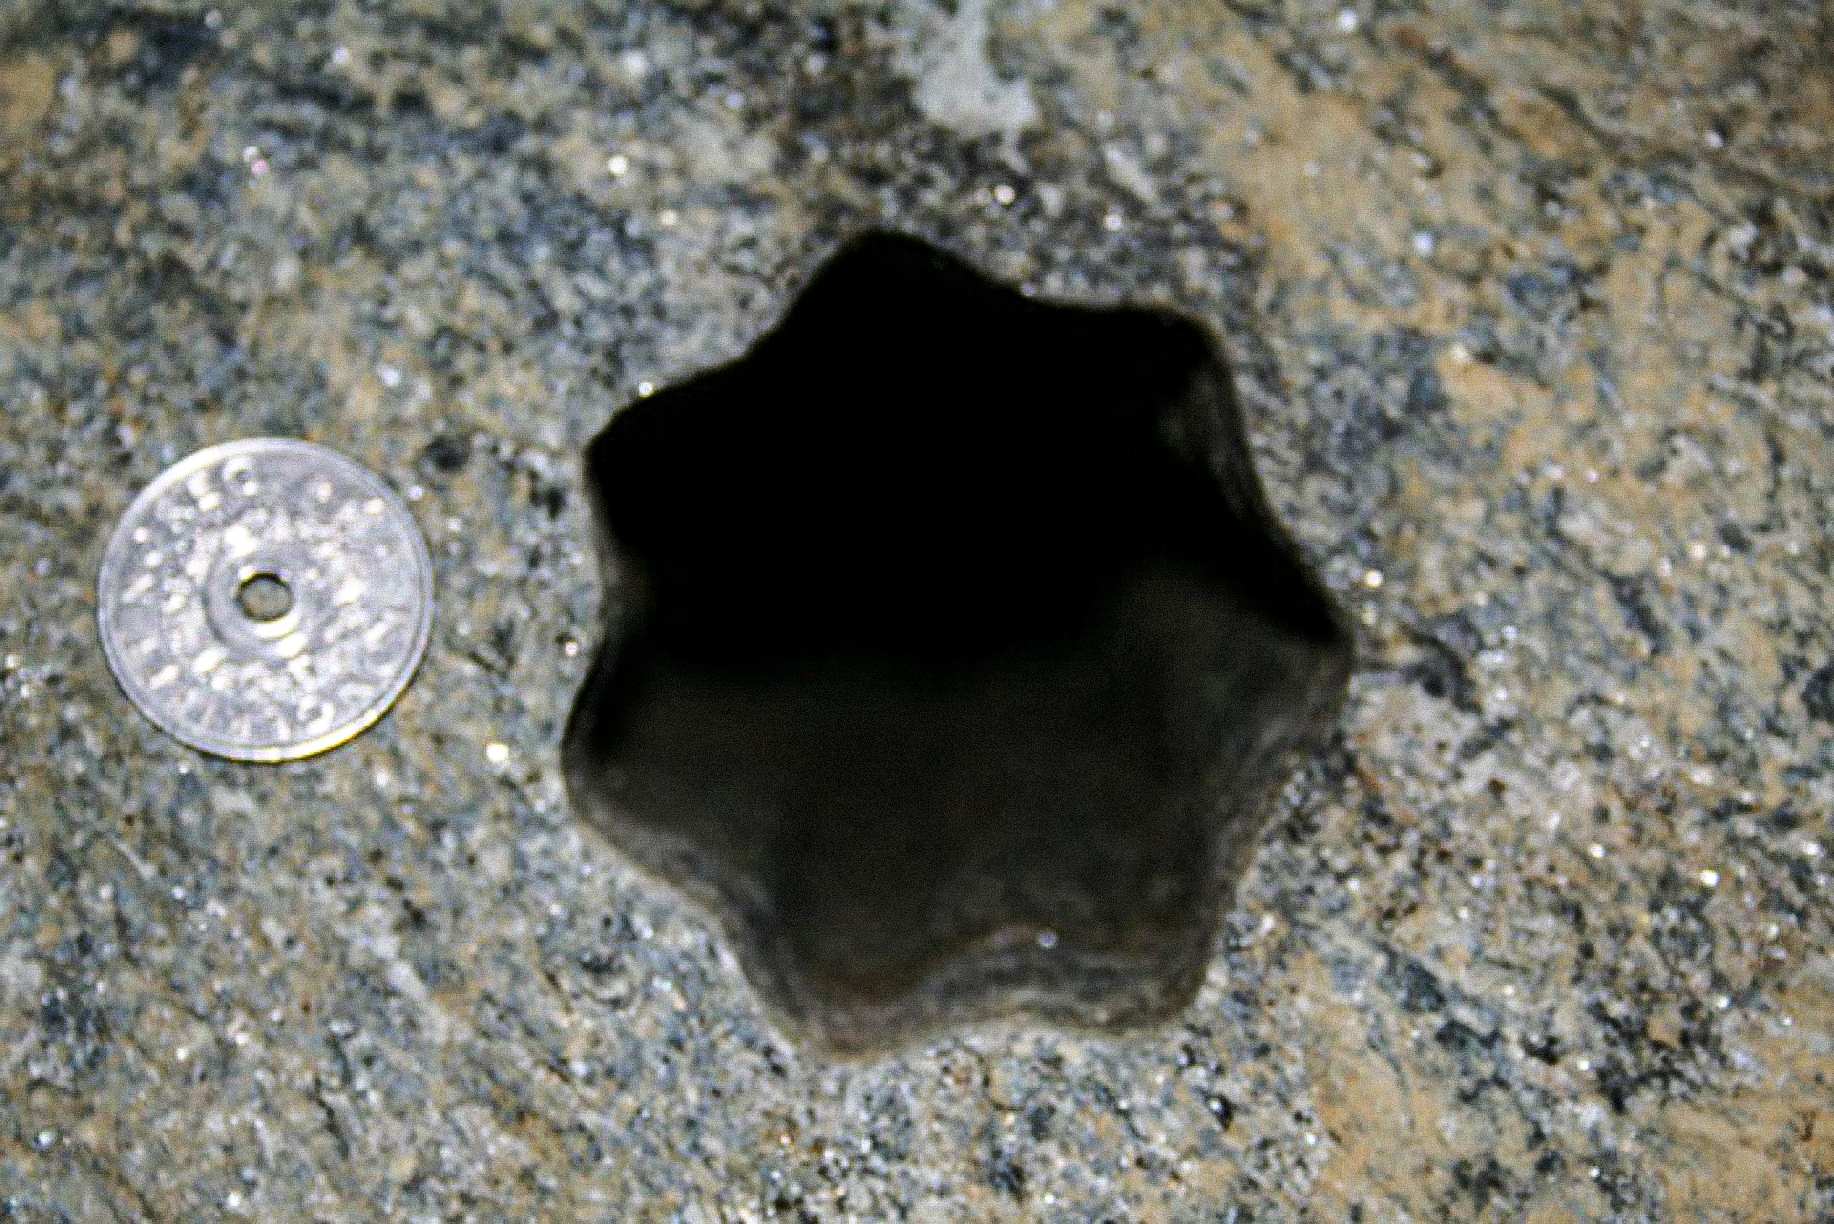 Ovu rupu u obliku zvijezde (sa sedam strana) pronašli su izvođači u petak, 30. studenog 2007. u Voldi u Norveškoj. Norveški novčić od 5 kruna promjera je 25 mm. Rupa je promjera cca 65 - 70 mm.